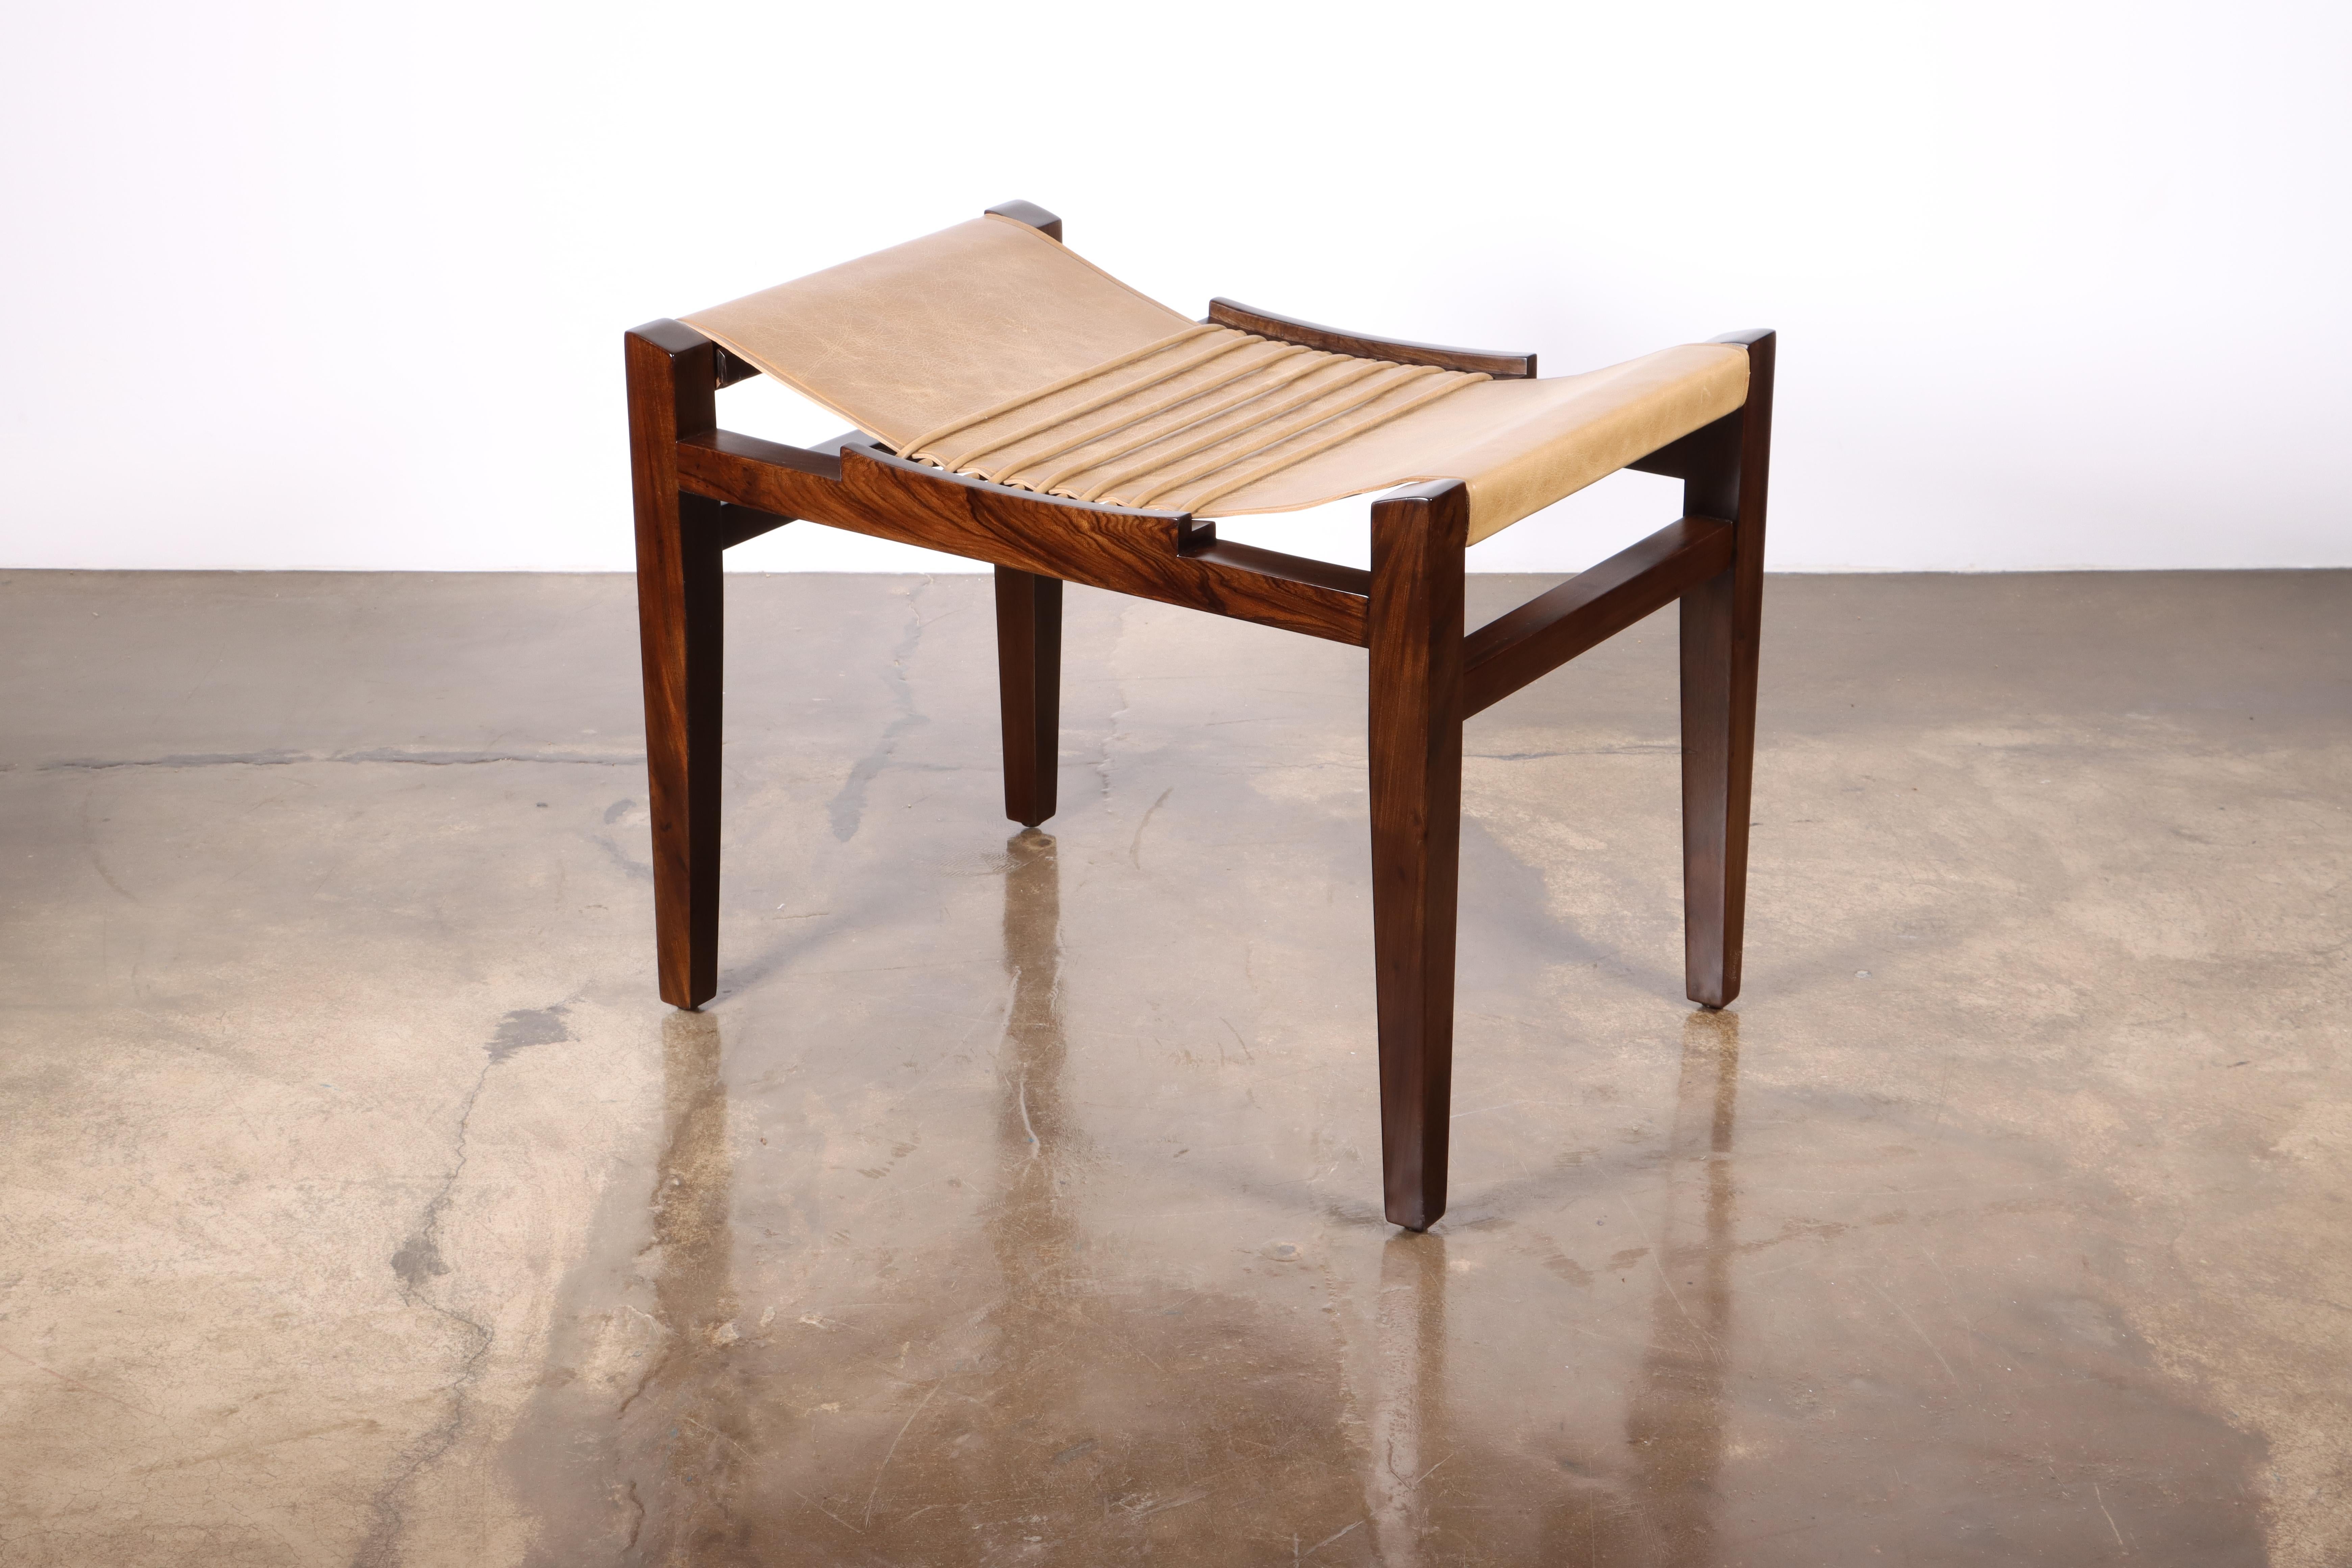 Le tabouret Luzio est doté d'une structure en bois massif et d'un siège en cuir élancé, avec des cordons en cuir faits à la main pour donner au siège sa forme caractéristique. Disponible en plusieurs cuirs standard assortis ou contrastés, ou dans le